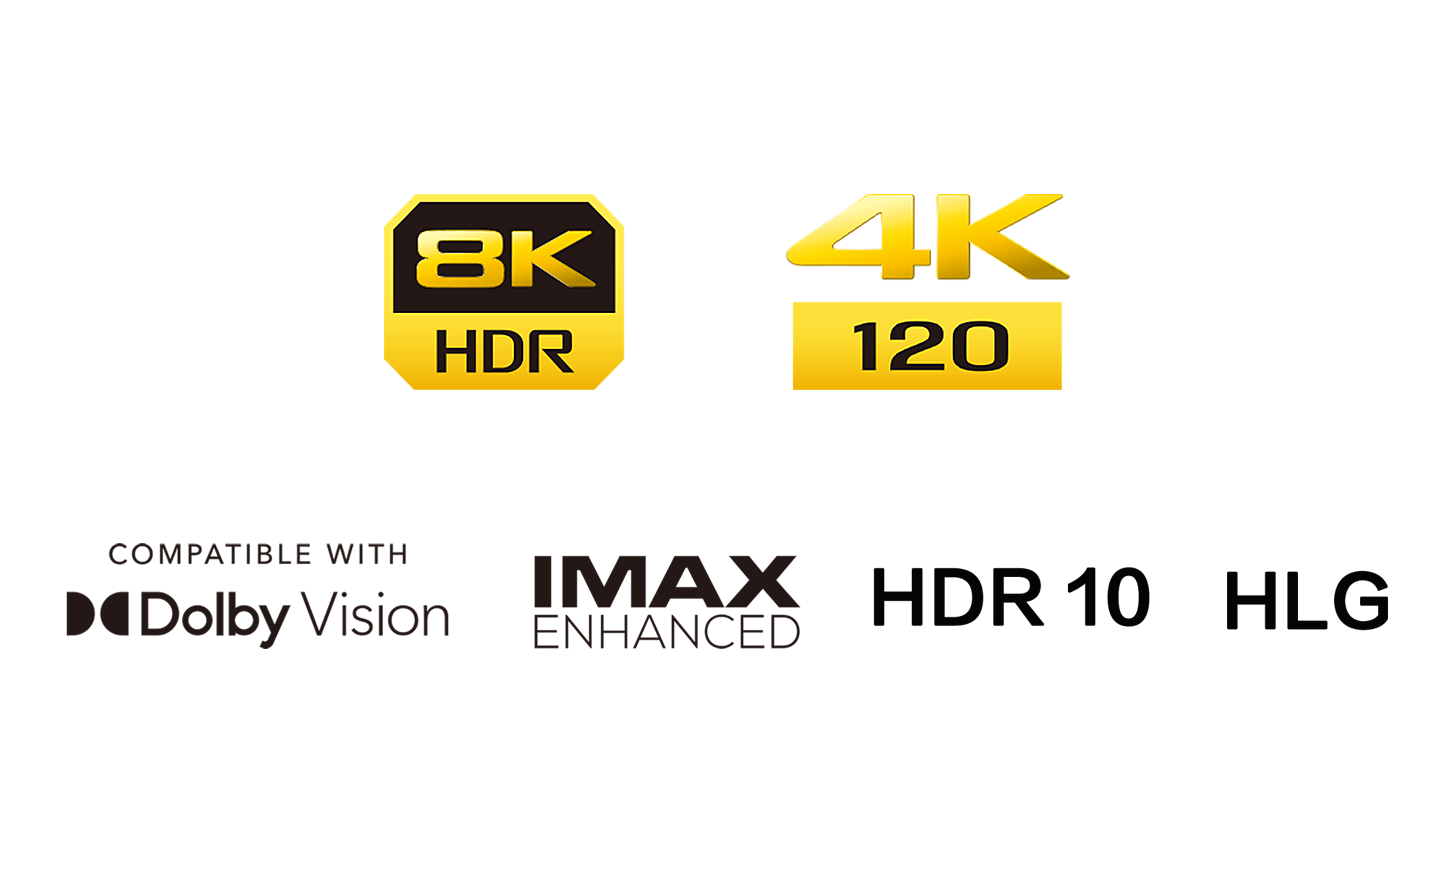 Logotip 8K HDR, logotip 4k 120, logotip Compatible with Dolby Vision, logotip HDR 10, logotip IMAX Enhanced, logotip HLG